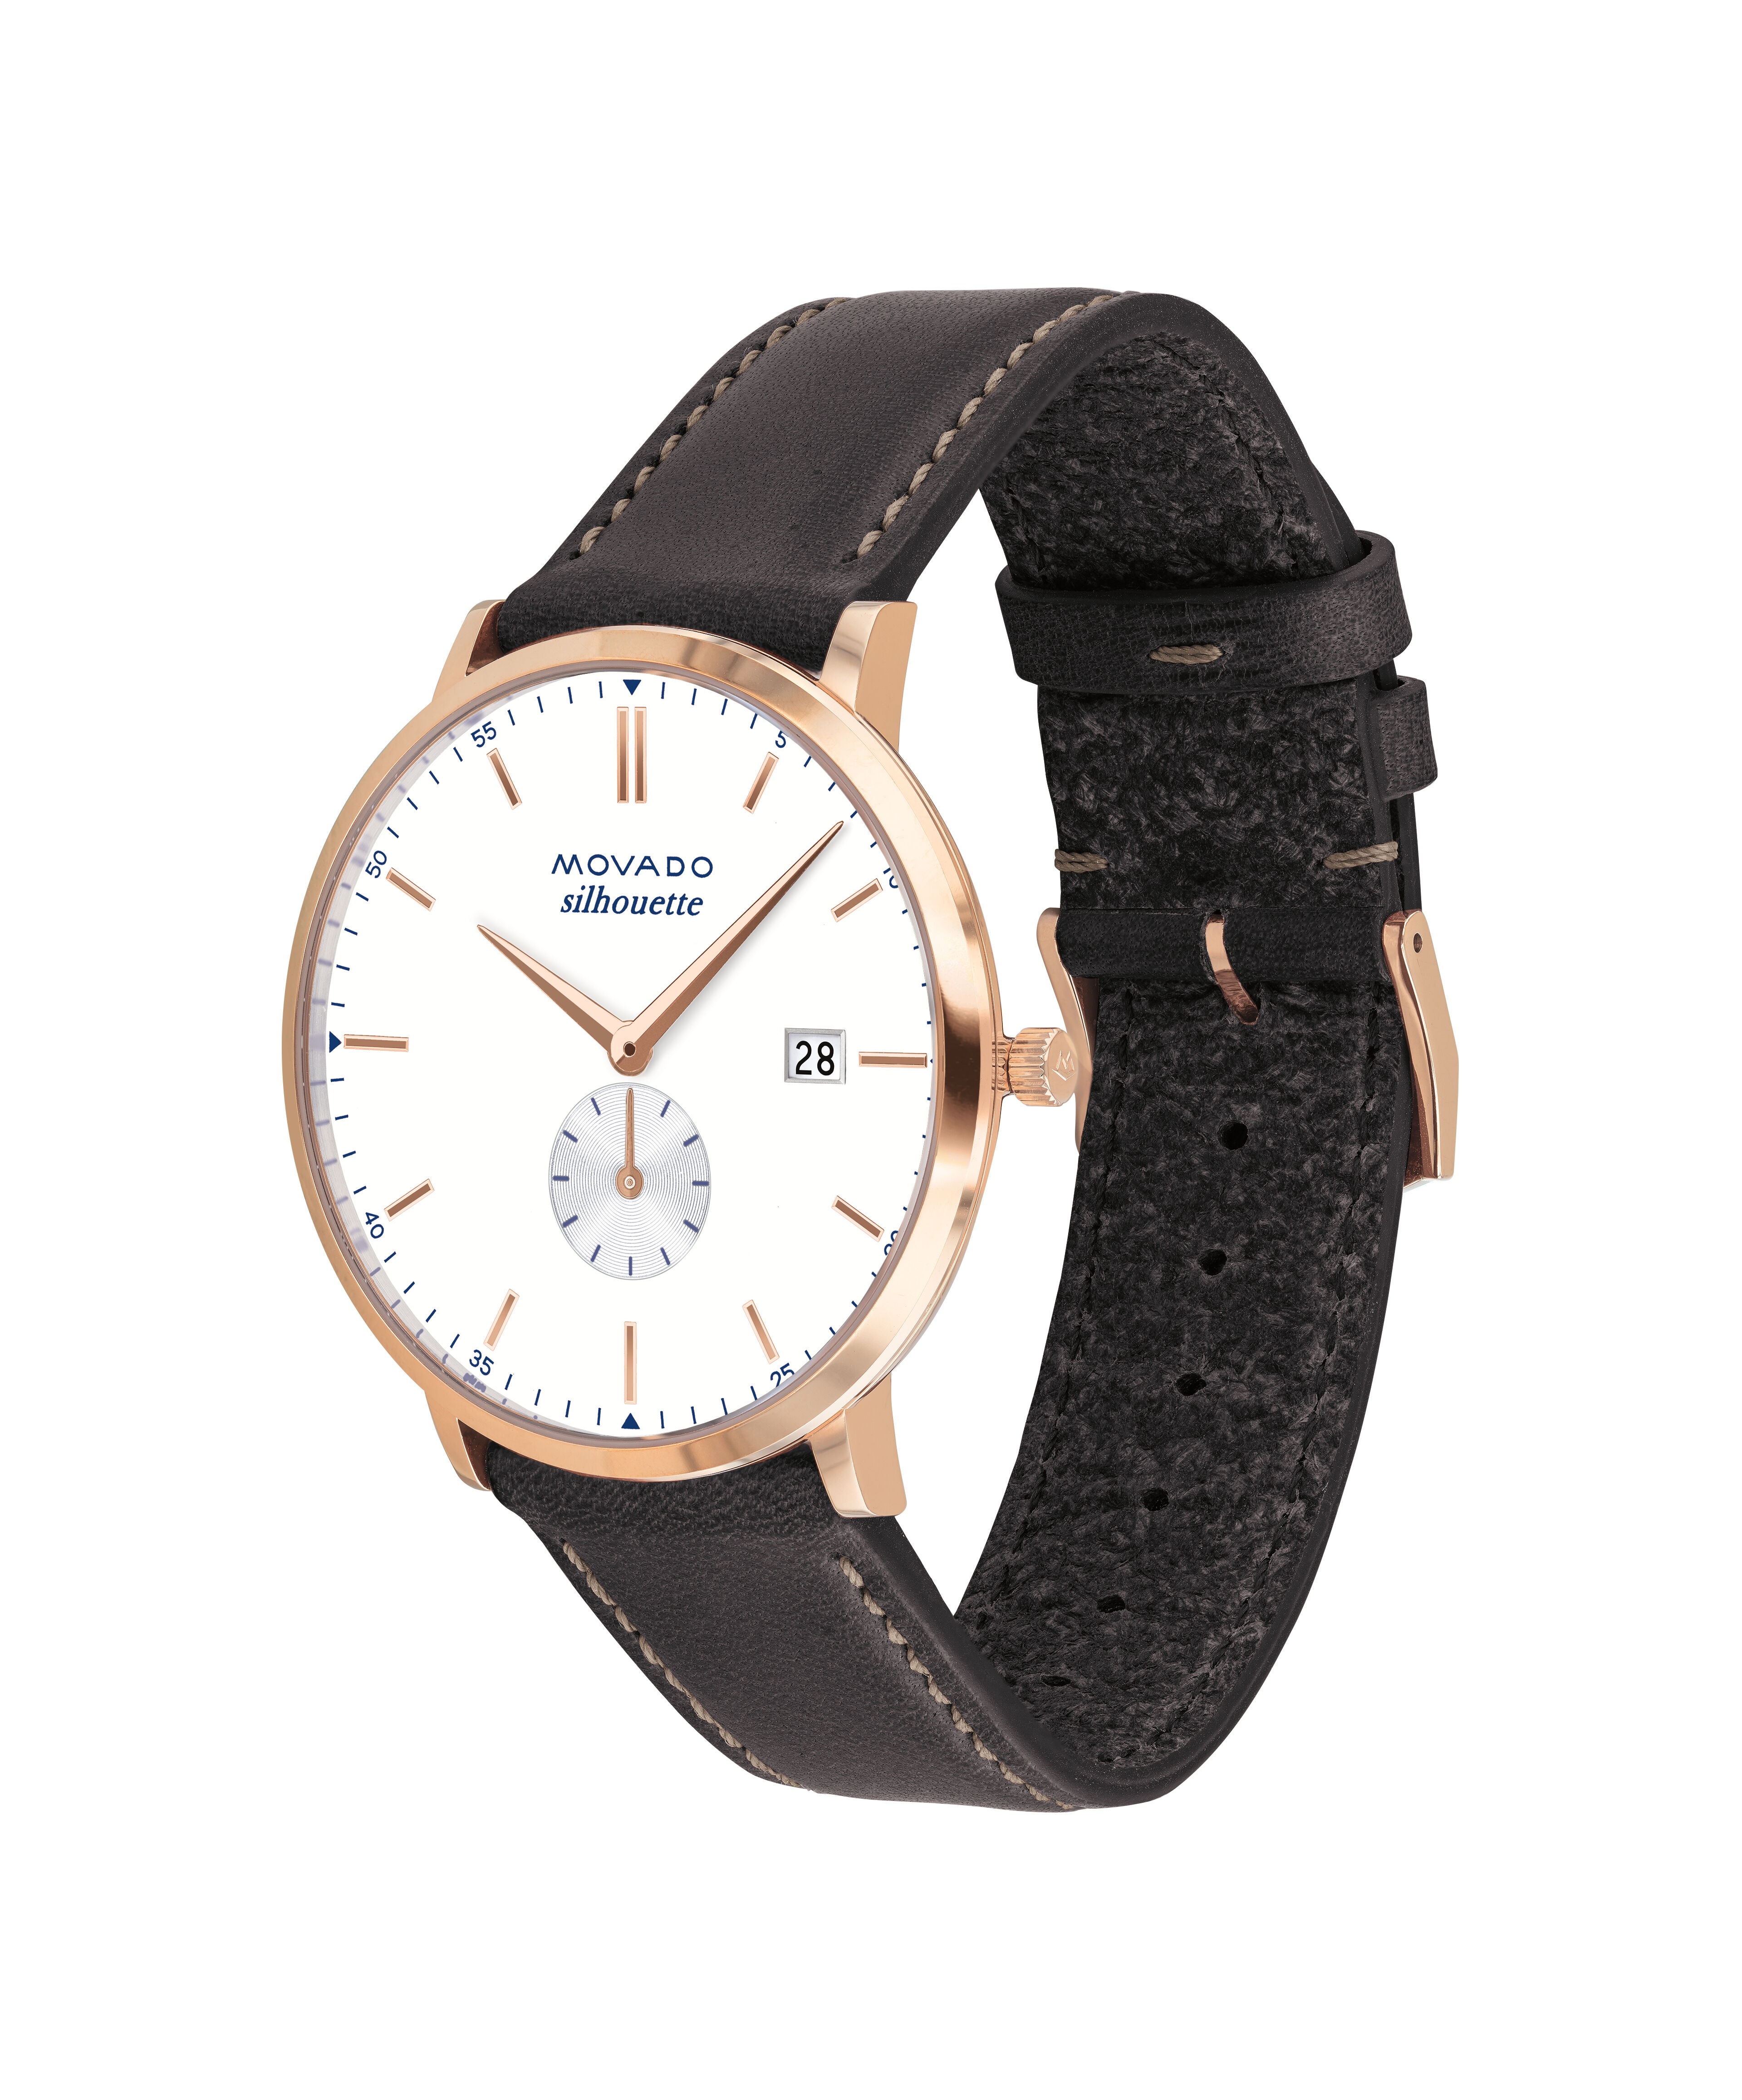 Copy Parmigiani Fleurier Watch